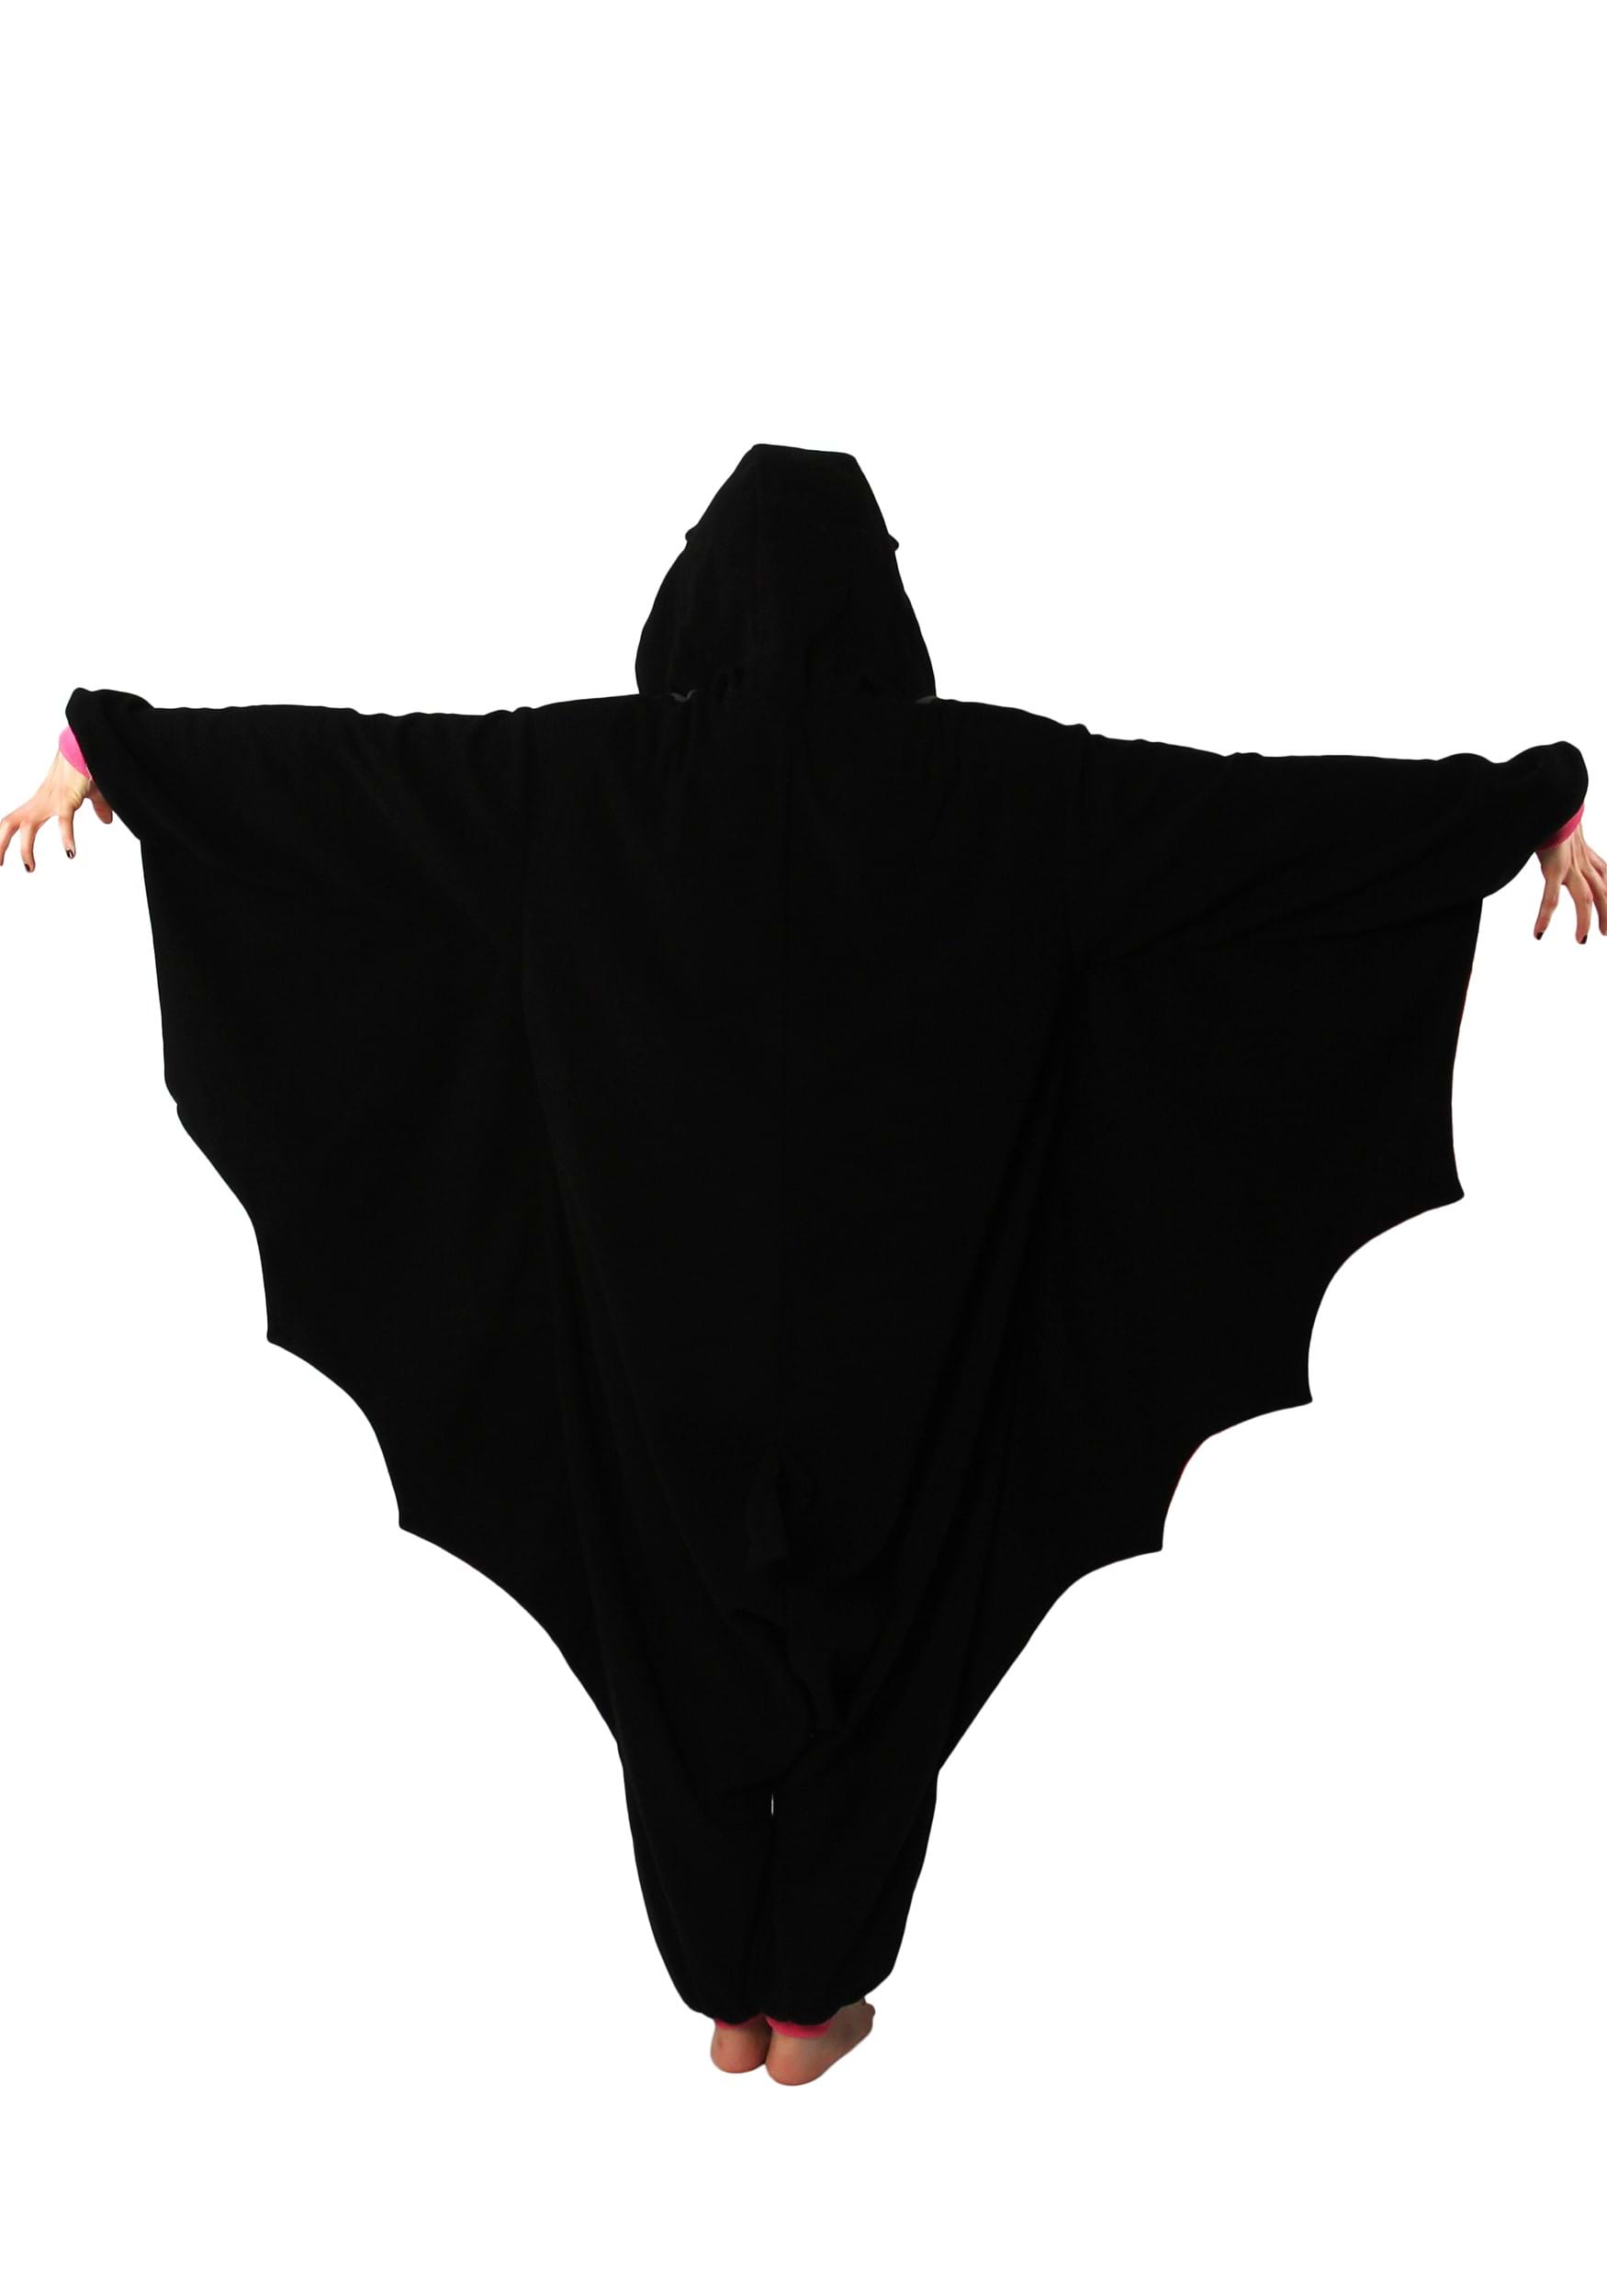 Black Bat Kigurumi For Adults